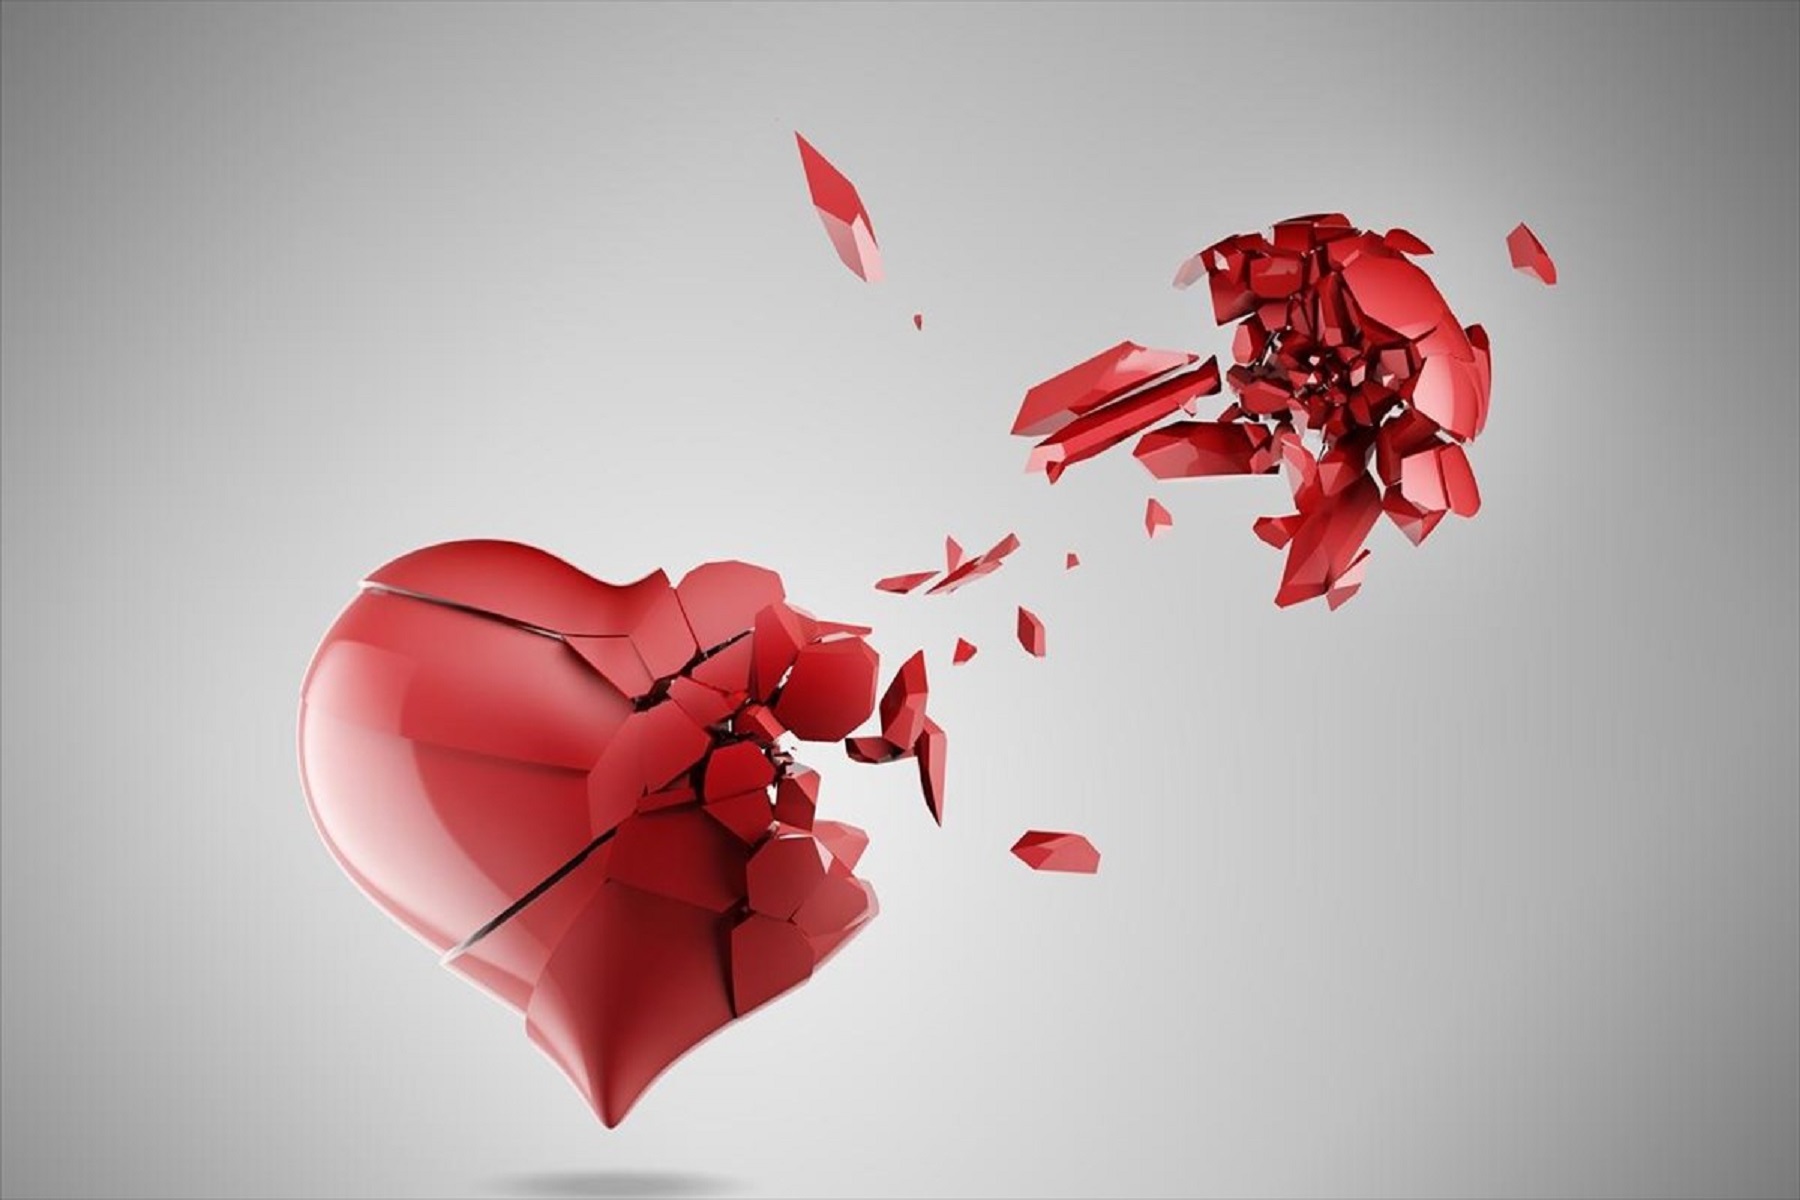 Απόρριψη Έρωτας: Όταν τα σημάδια που αφήνει έχουν σχέση με την προσωπικότητά μας